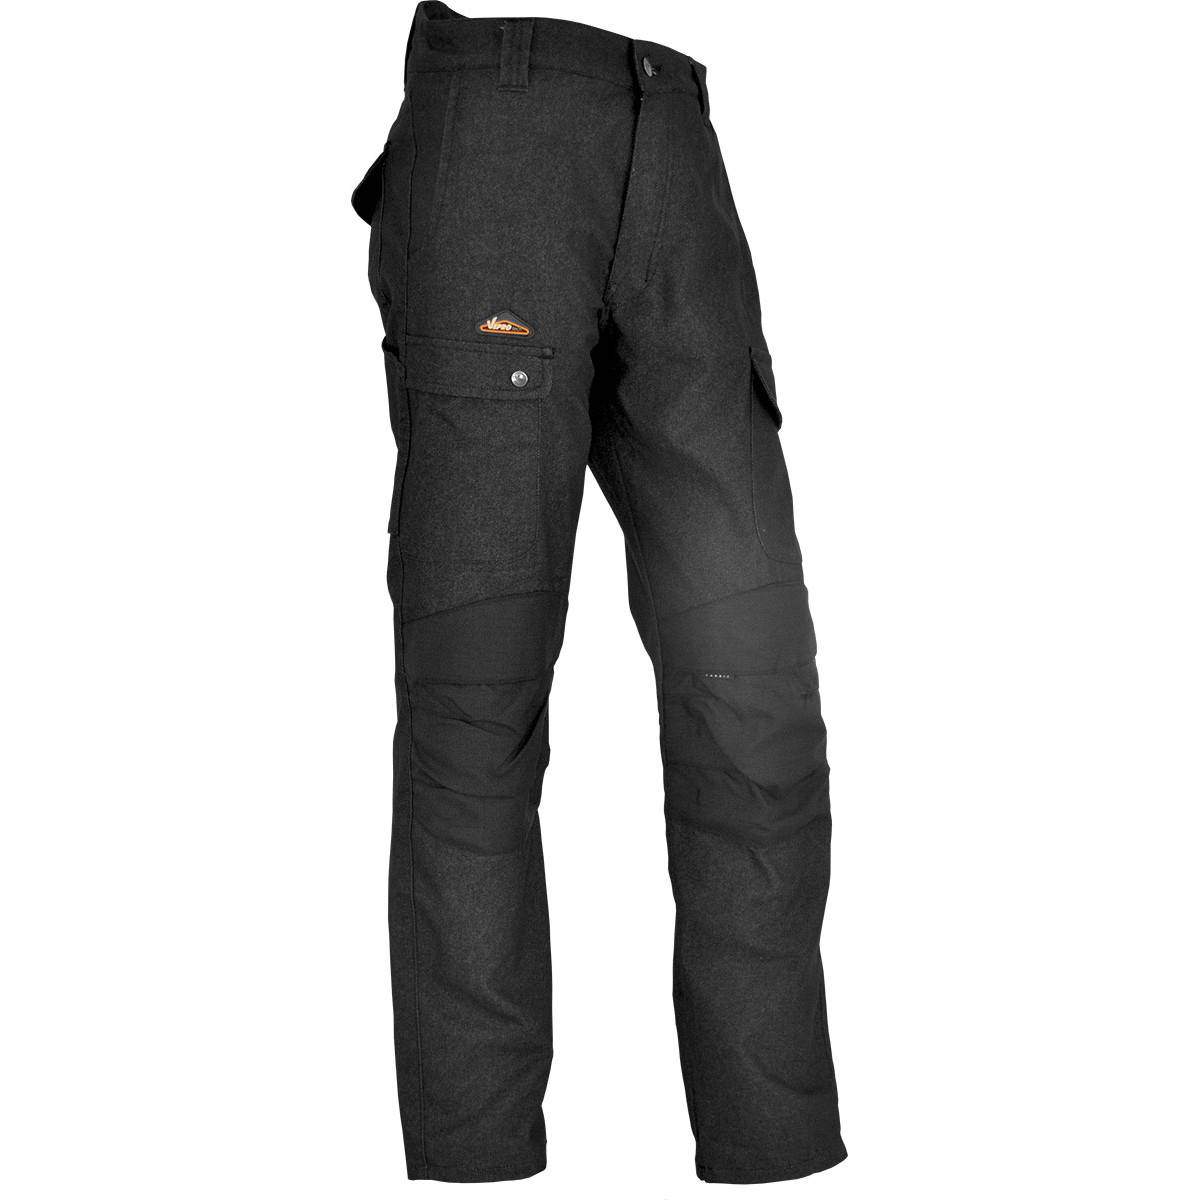 Pantalon de chantier ENDU Taille 46 Noir, poches multiples, genouillères incluses